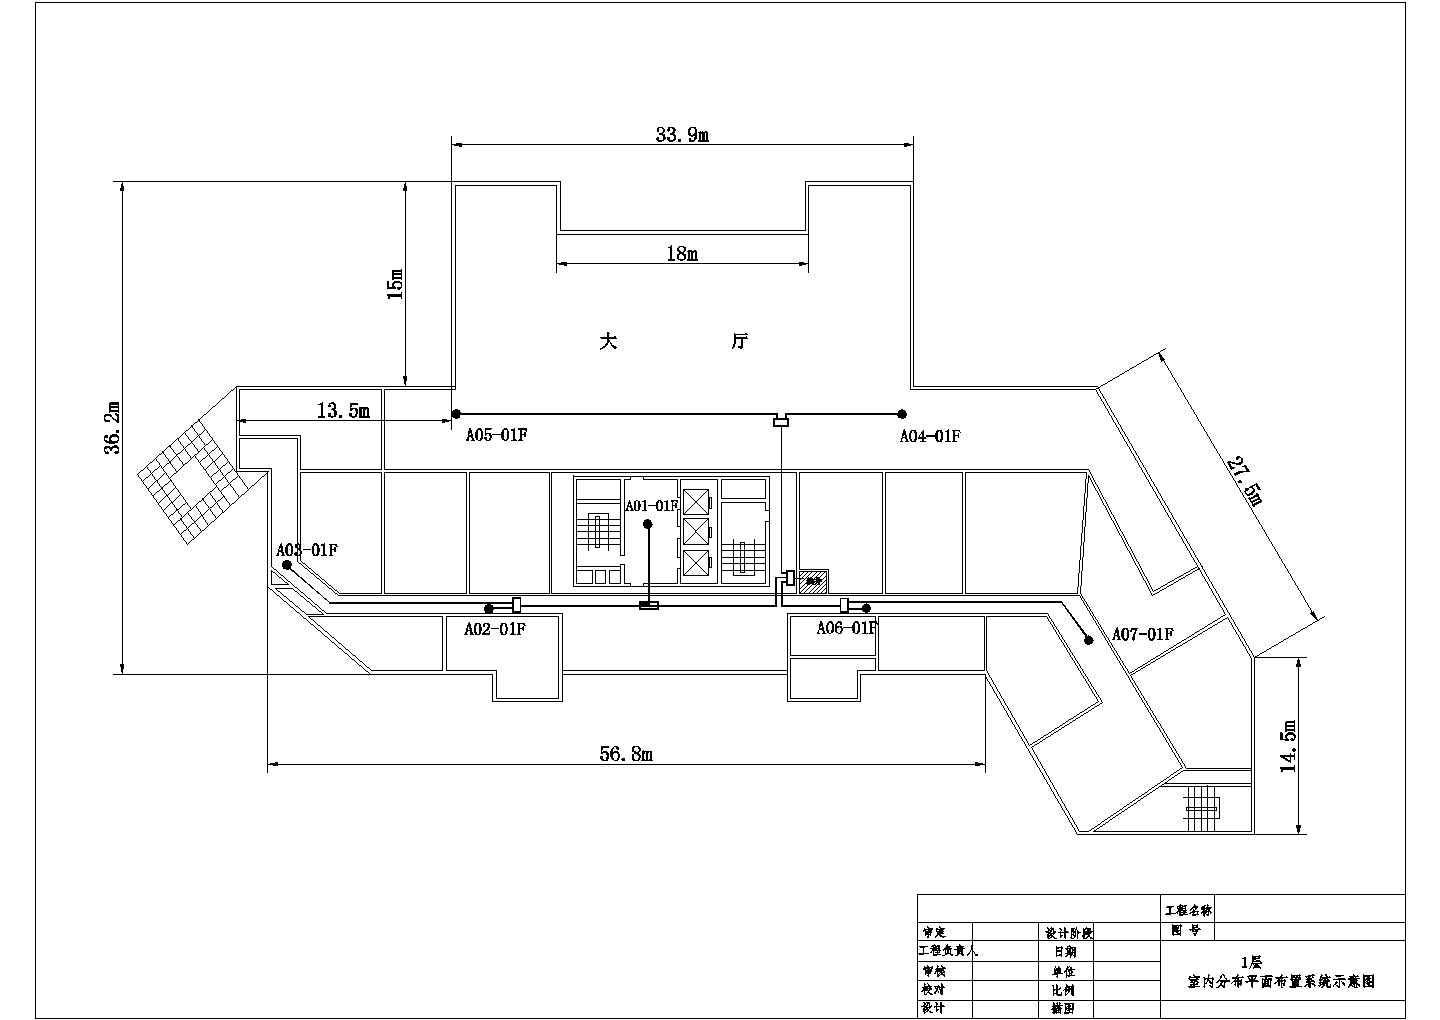 海关大厦1F天线分布图CAD图纸